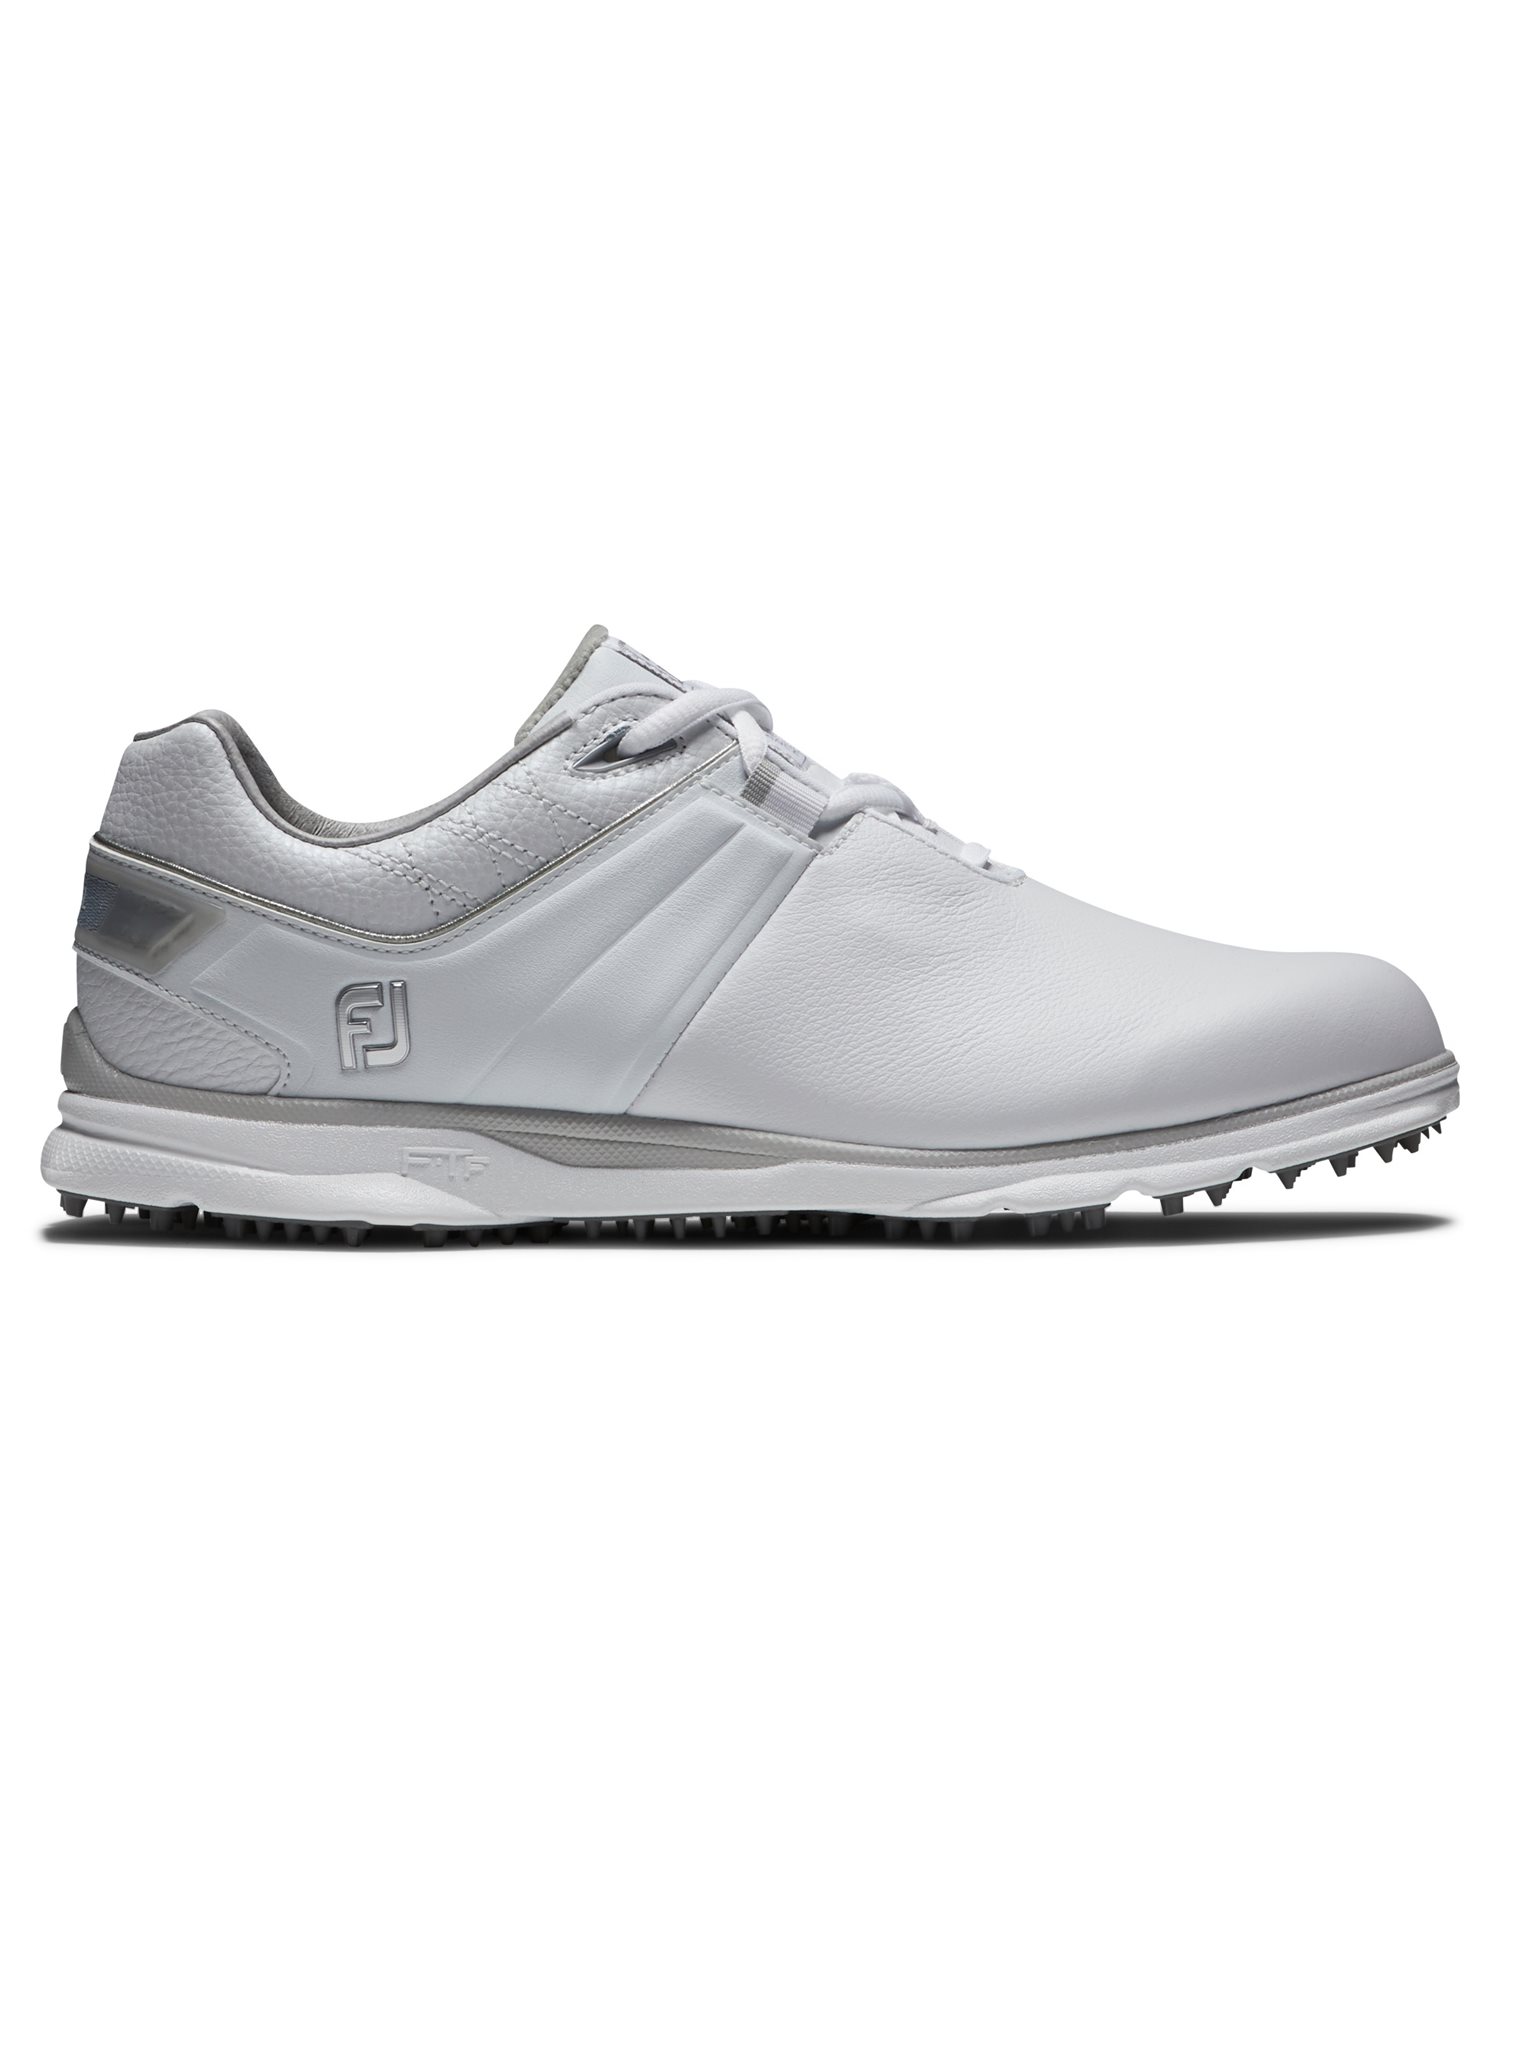 nauwelijks karbonade De FootJoy dames golfschoenen Pro/SL WIDE wit-grijs - Golftassen, Golfclubs,  Golfschoenen | Ook online kopen bij Golfers Point | Golfers Point